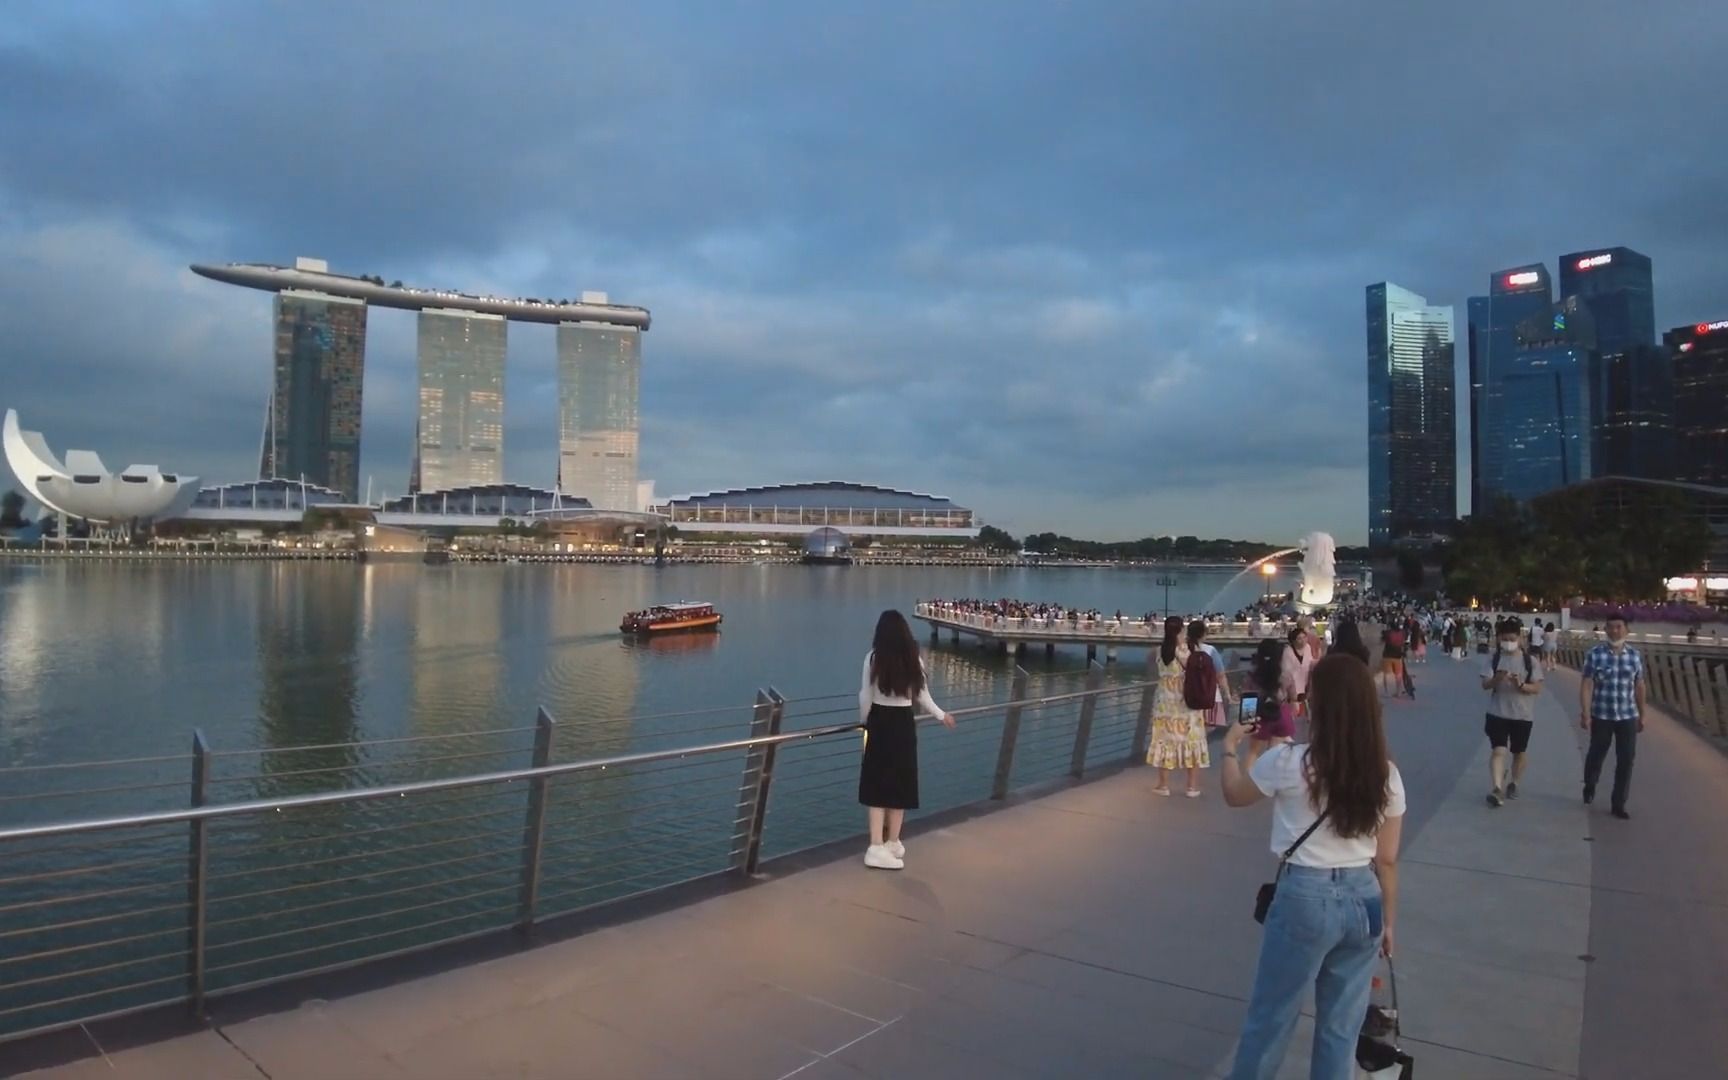 【超清新加坡】日落时分的新加坡城市街景滑板车骑行 (1080p高清版)